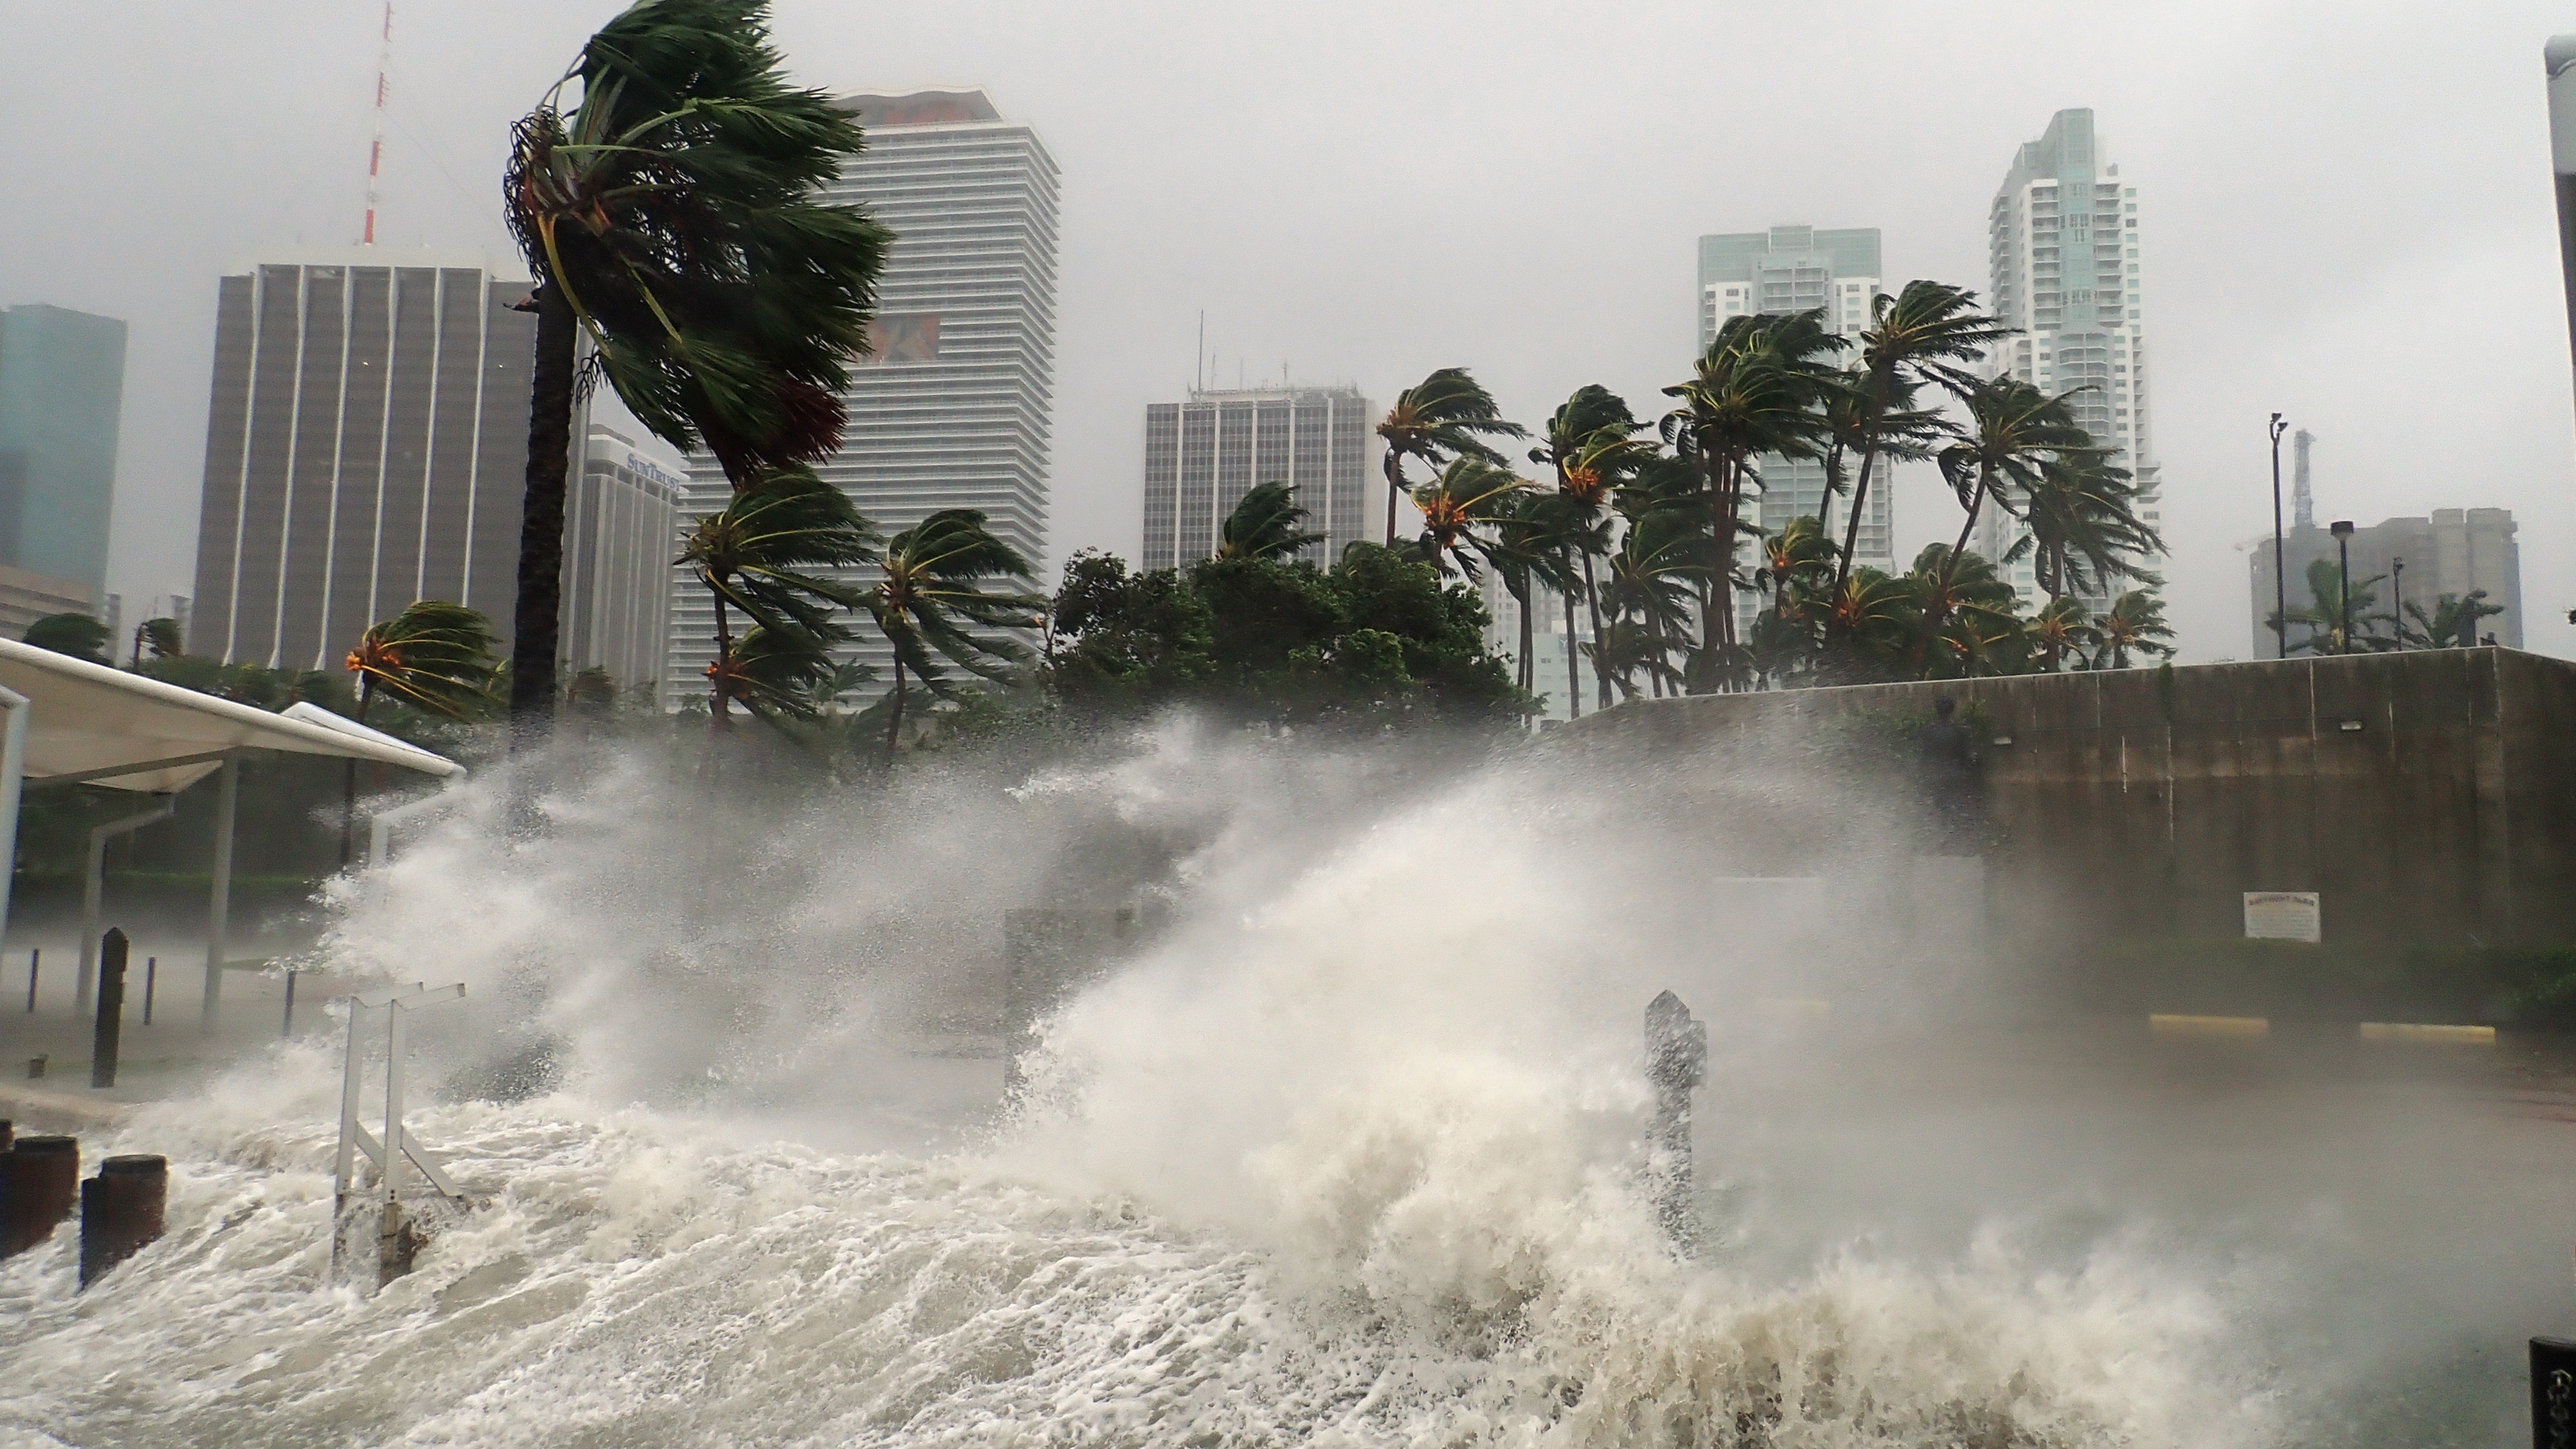 Hurricane Irma Extreme Image of Storm Striking Miami, Florida